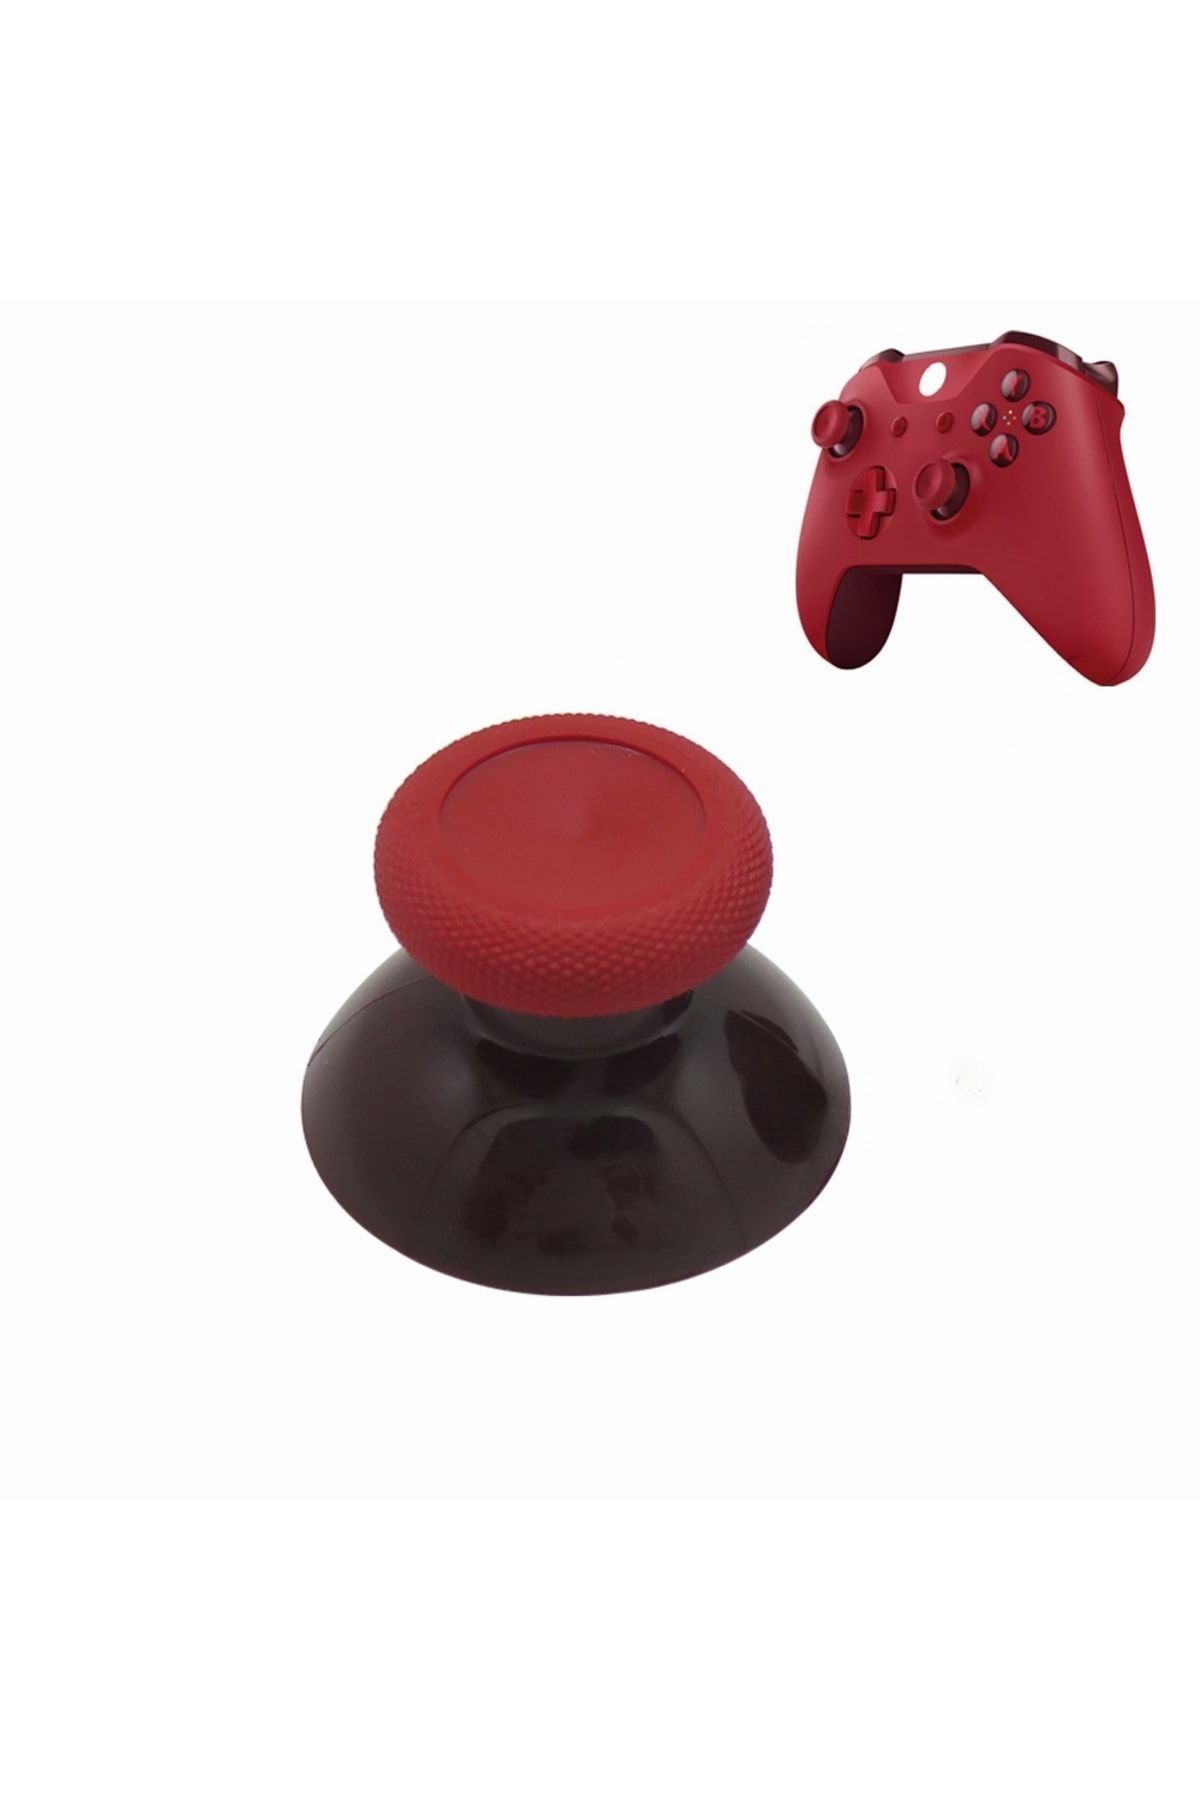 POPKONSOL 1 Adet Xbox One - One S/x - Series S/x Uyumlu Analog Topuz Renkli Başlık Kırmızı - Bordo